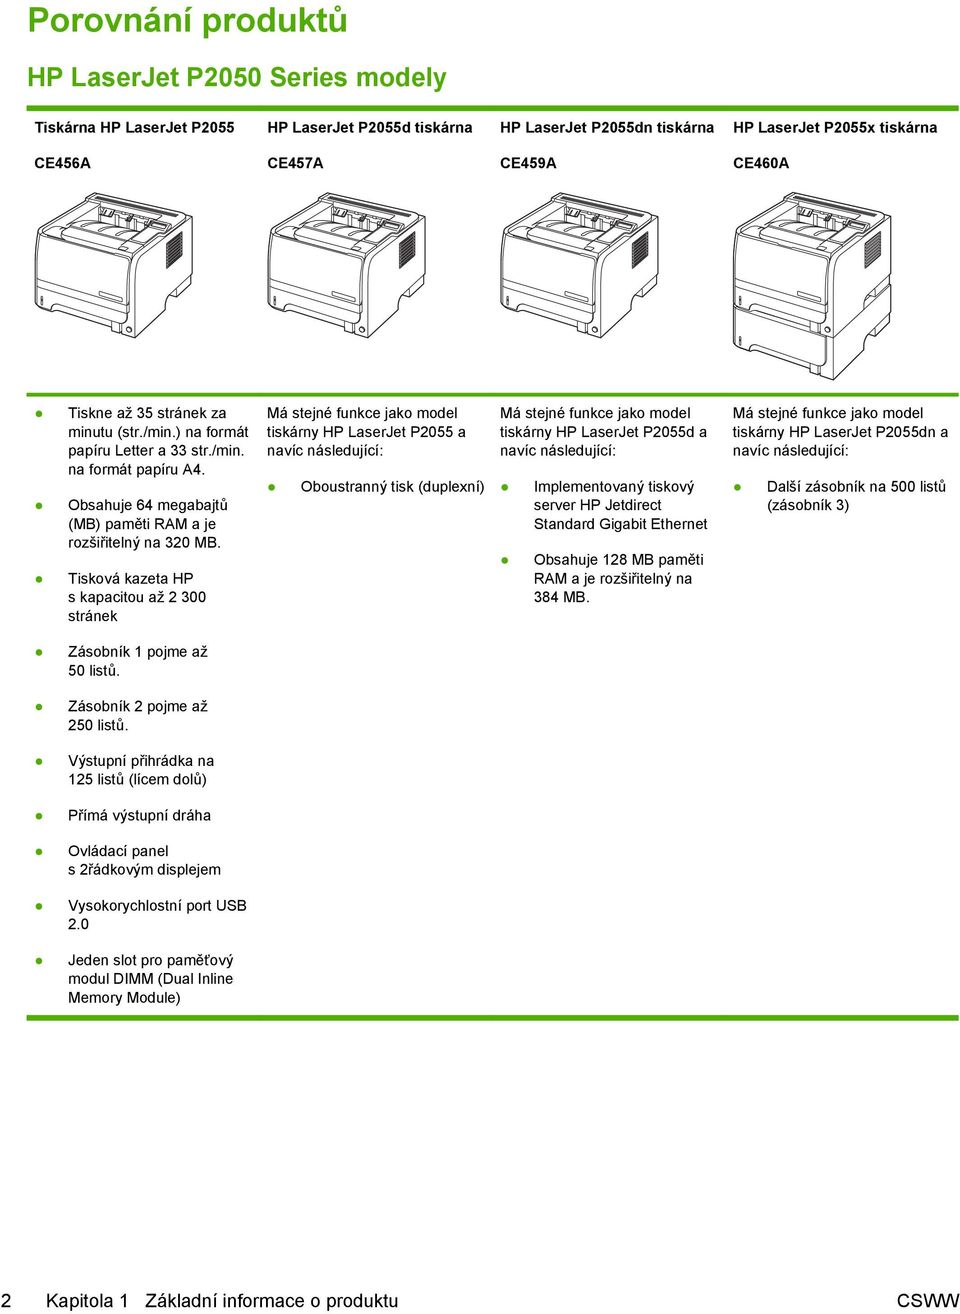 Tisková kazeta HP s kapacitou až 2 300 stránek Má stejné funkce jako model tiskárny HP LaserJet P2055 a navíc následující: Oboustranný tisk (duplexní) Má stejné funkce jako model tiskárny HP LaserJet